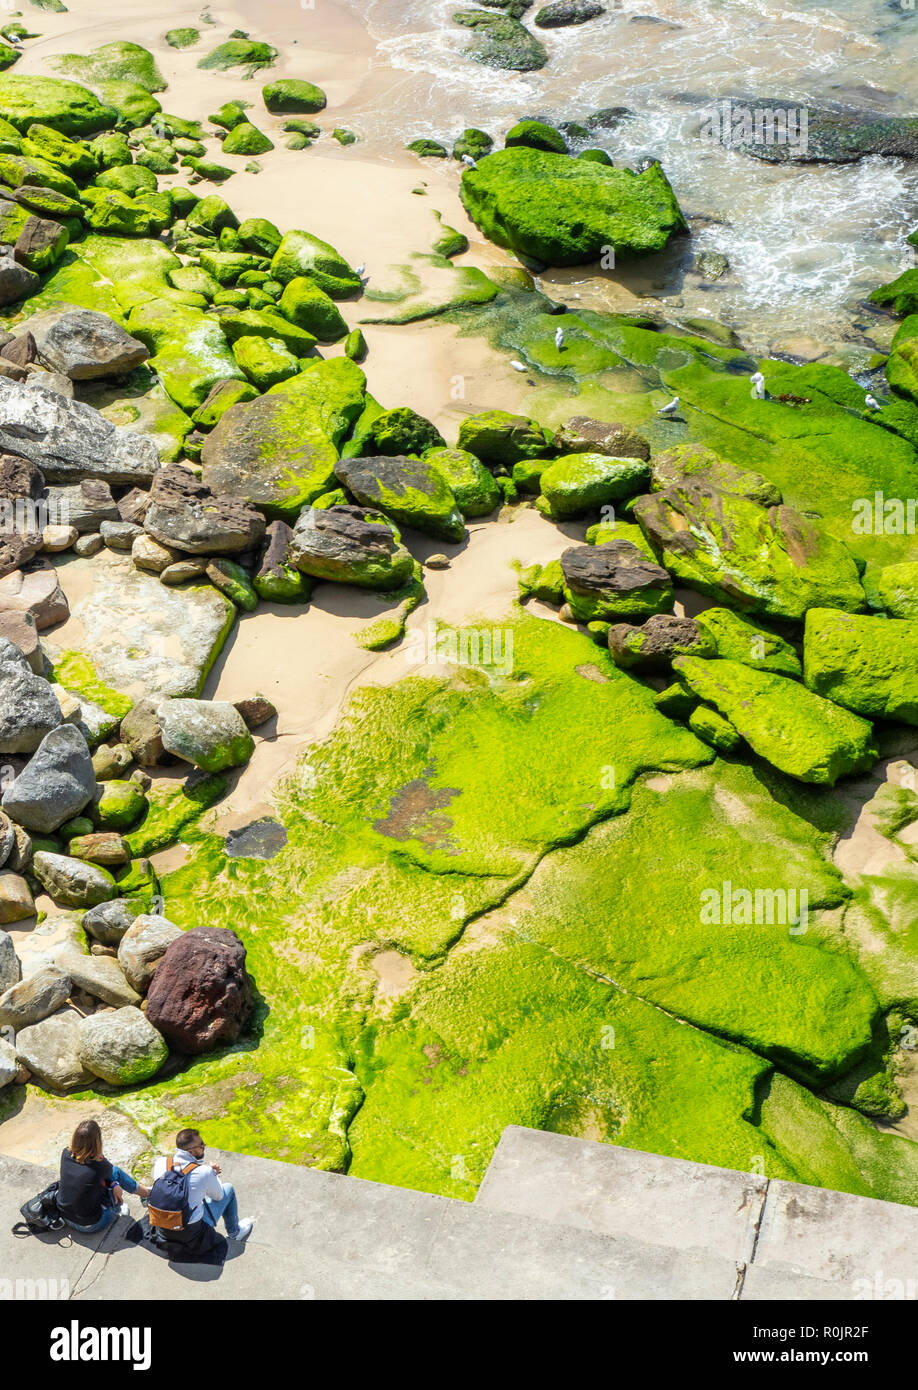 Pareja Sentada por rocas cubiertas de algas en el extremo sur de la playa de Bondi, Sydney, NSW, Australia. Foto de stock